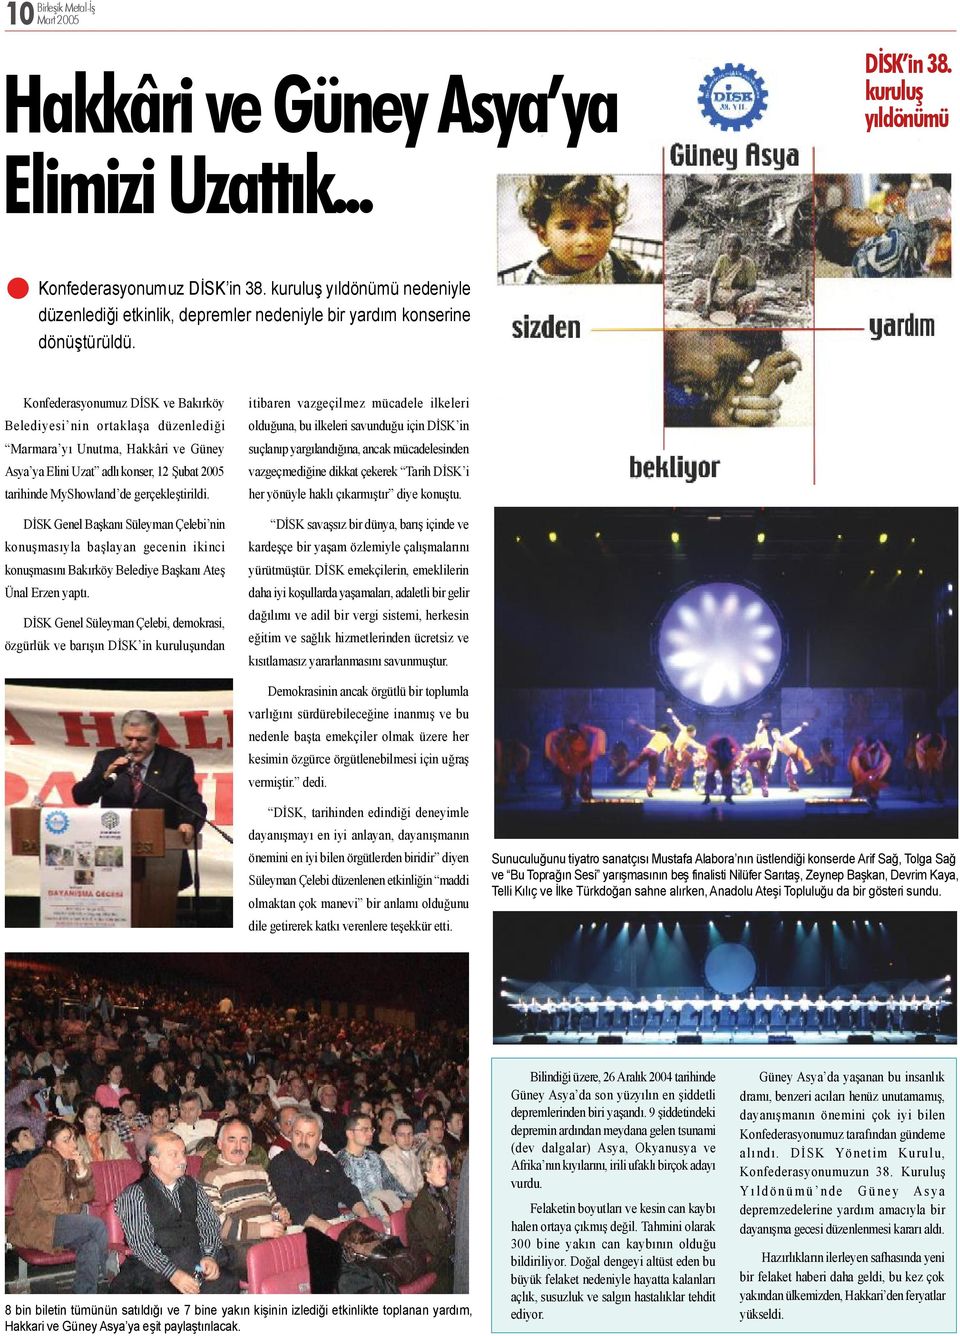 Konfederasyonumuz DİSK ve Bakırköy Belediyesi nin ortaklaşa düzenlediği Marmara yı Unutma, Hakkâri ve Güney Asya ya Elini Uzat adlı konser, 12 Şubat 2005 tarihinde MyShowland de gerçekleştirildi.